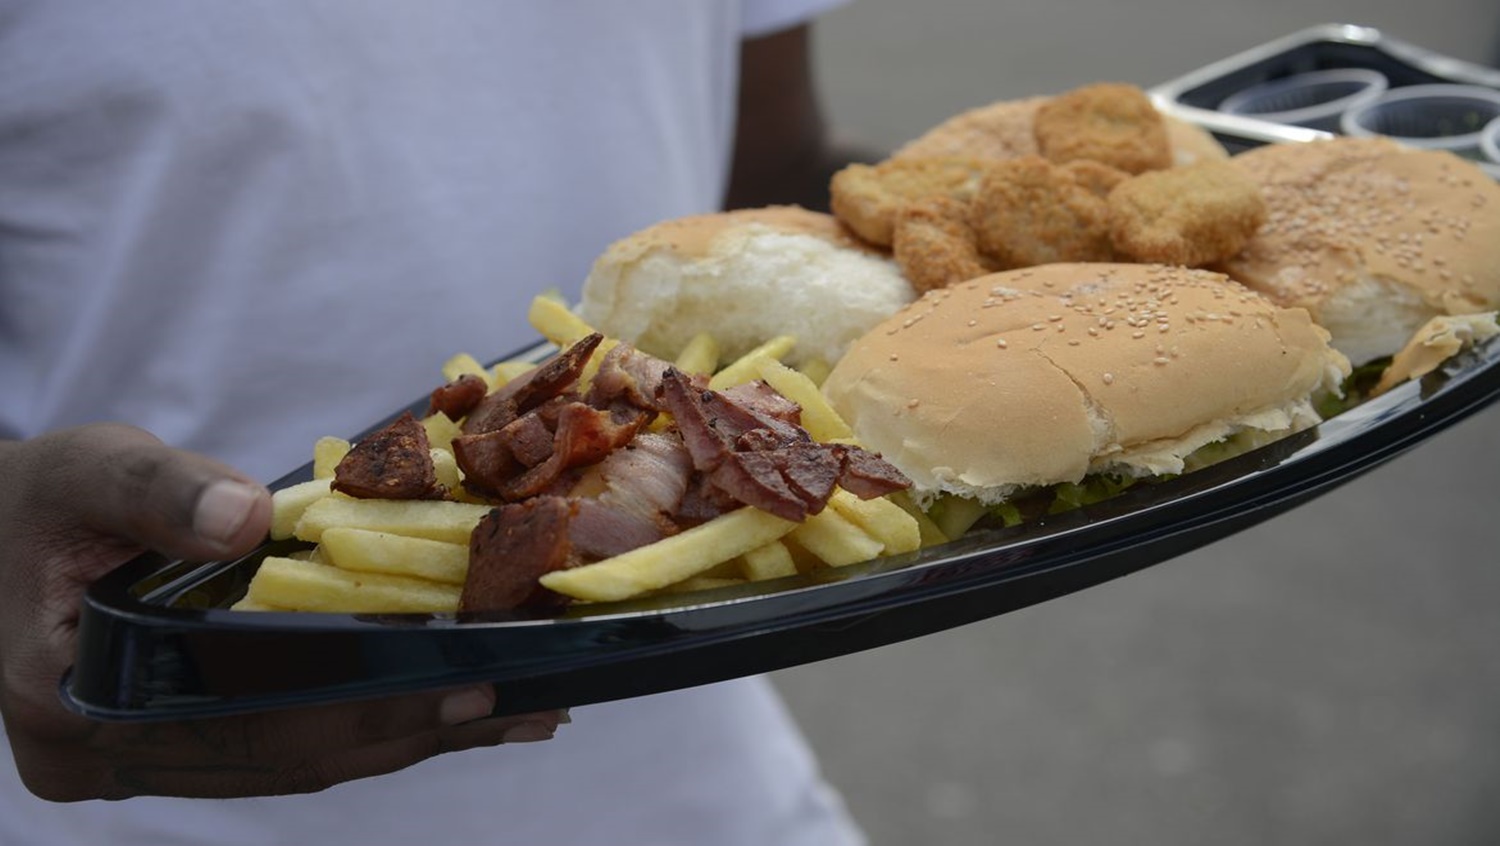 GORDOFOBIA: Campanha visa acabar com preconceitos em relação à obesidade